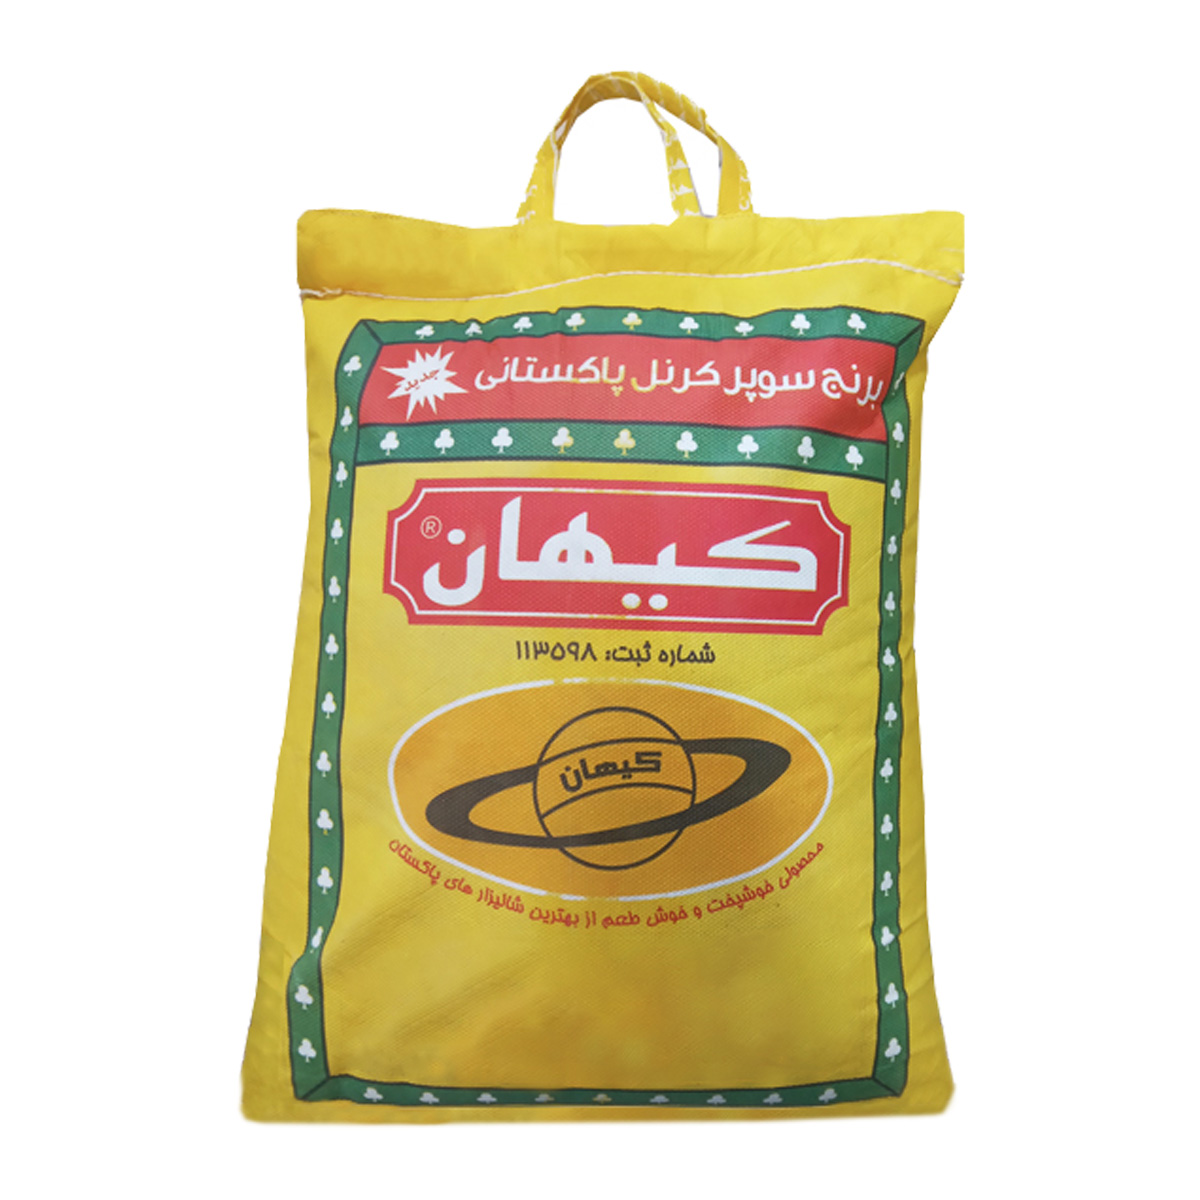 نکته خرید - قیمت روز برنج پاکستانی سوپر کرنل کیهان - 10 کیلوگرم خرید